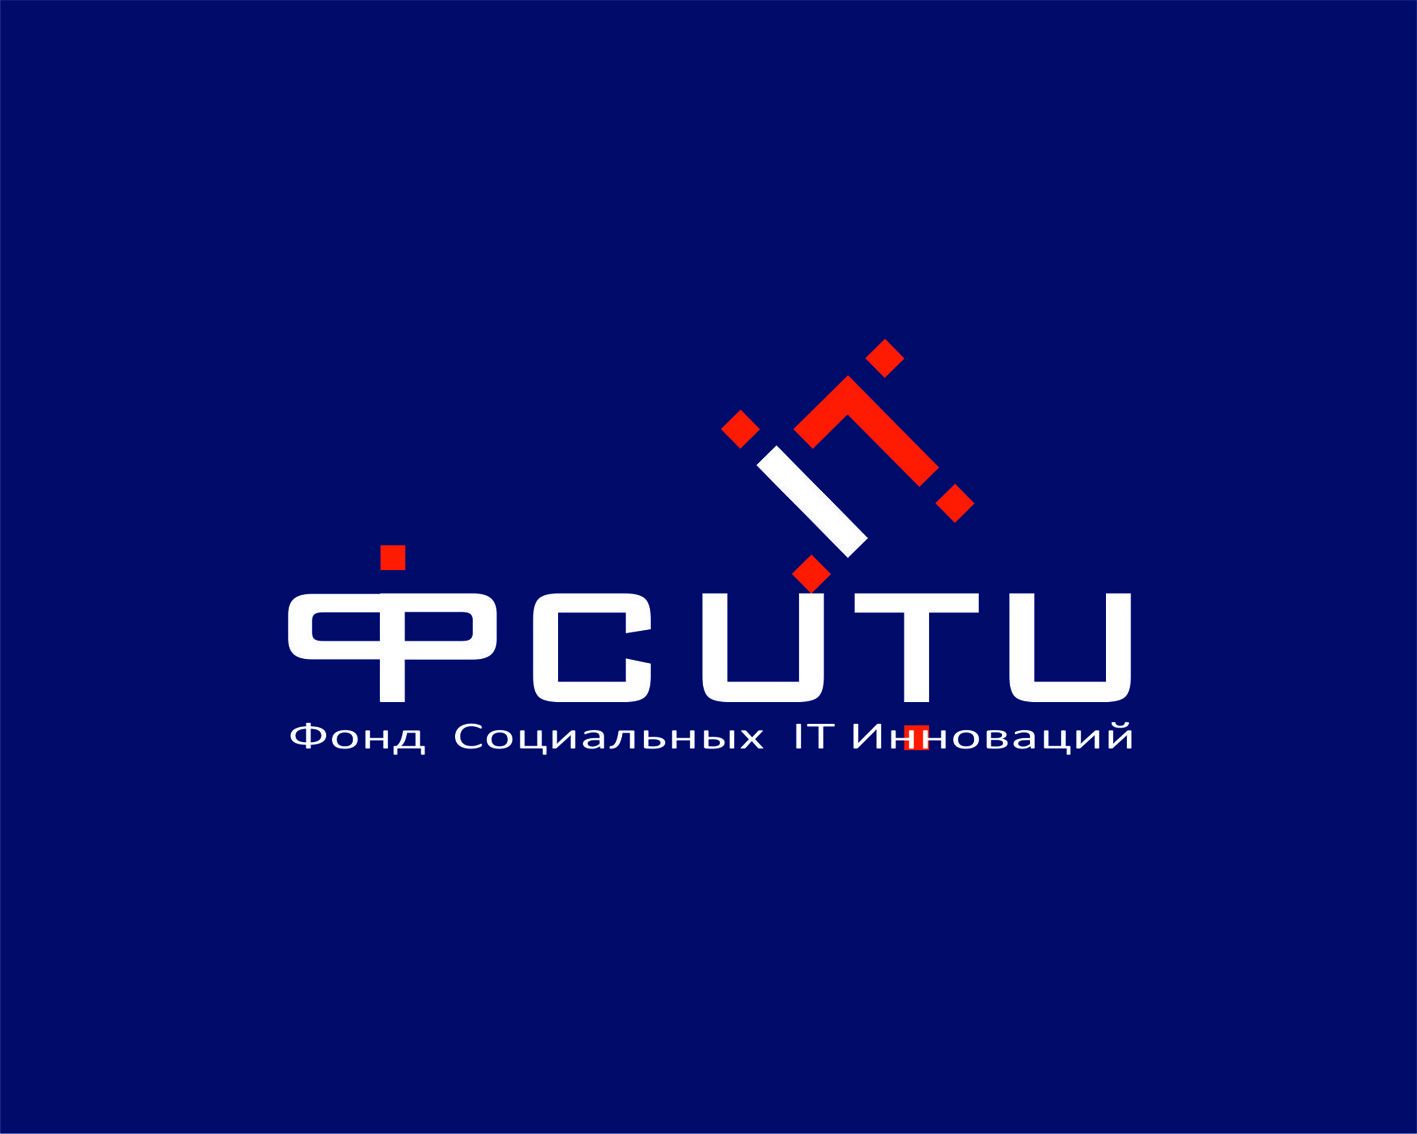 Логотип для ФСИТИ - Фонд Социальных IT Инноваций  - дизайнер DocA